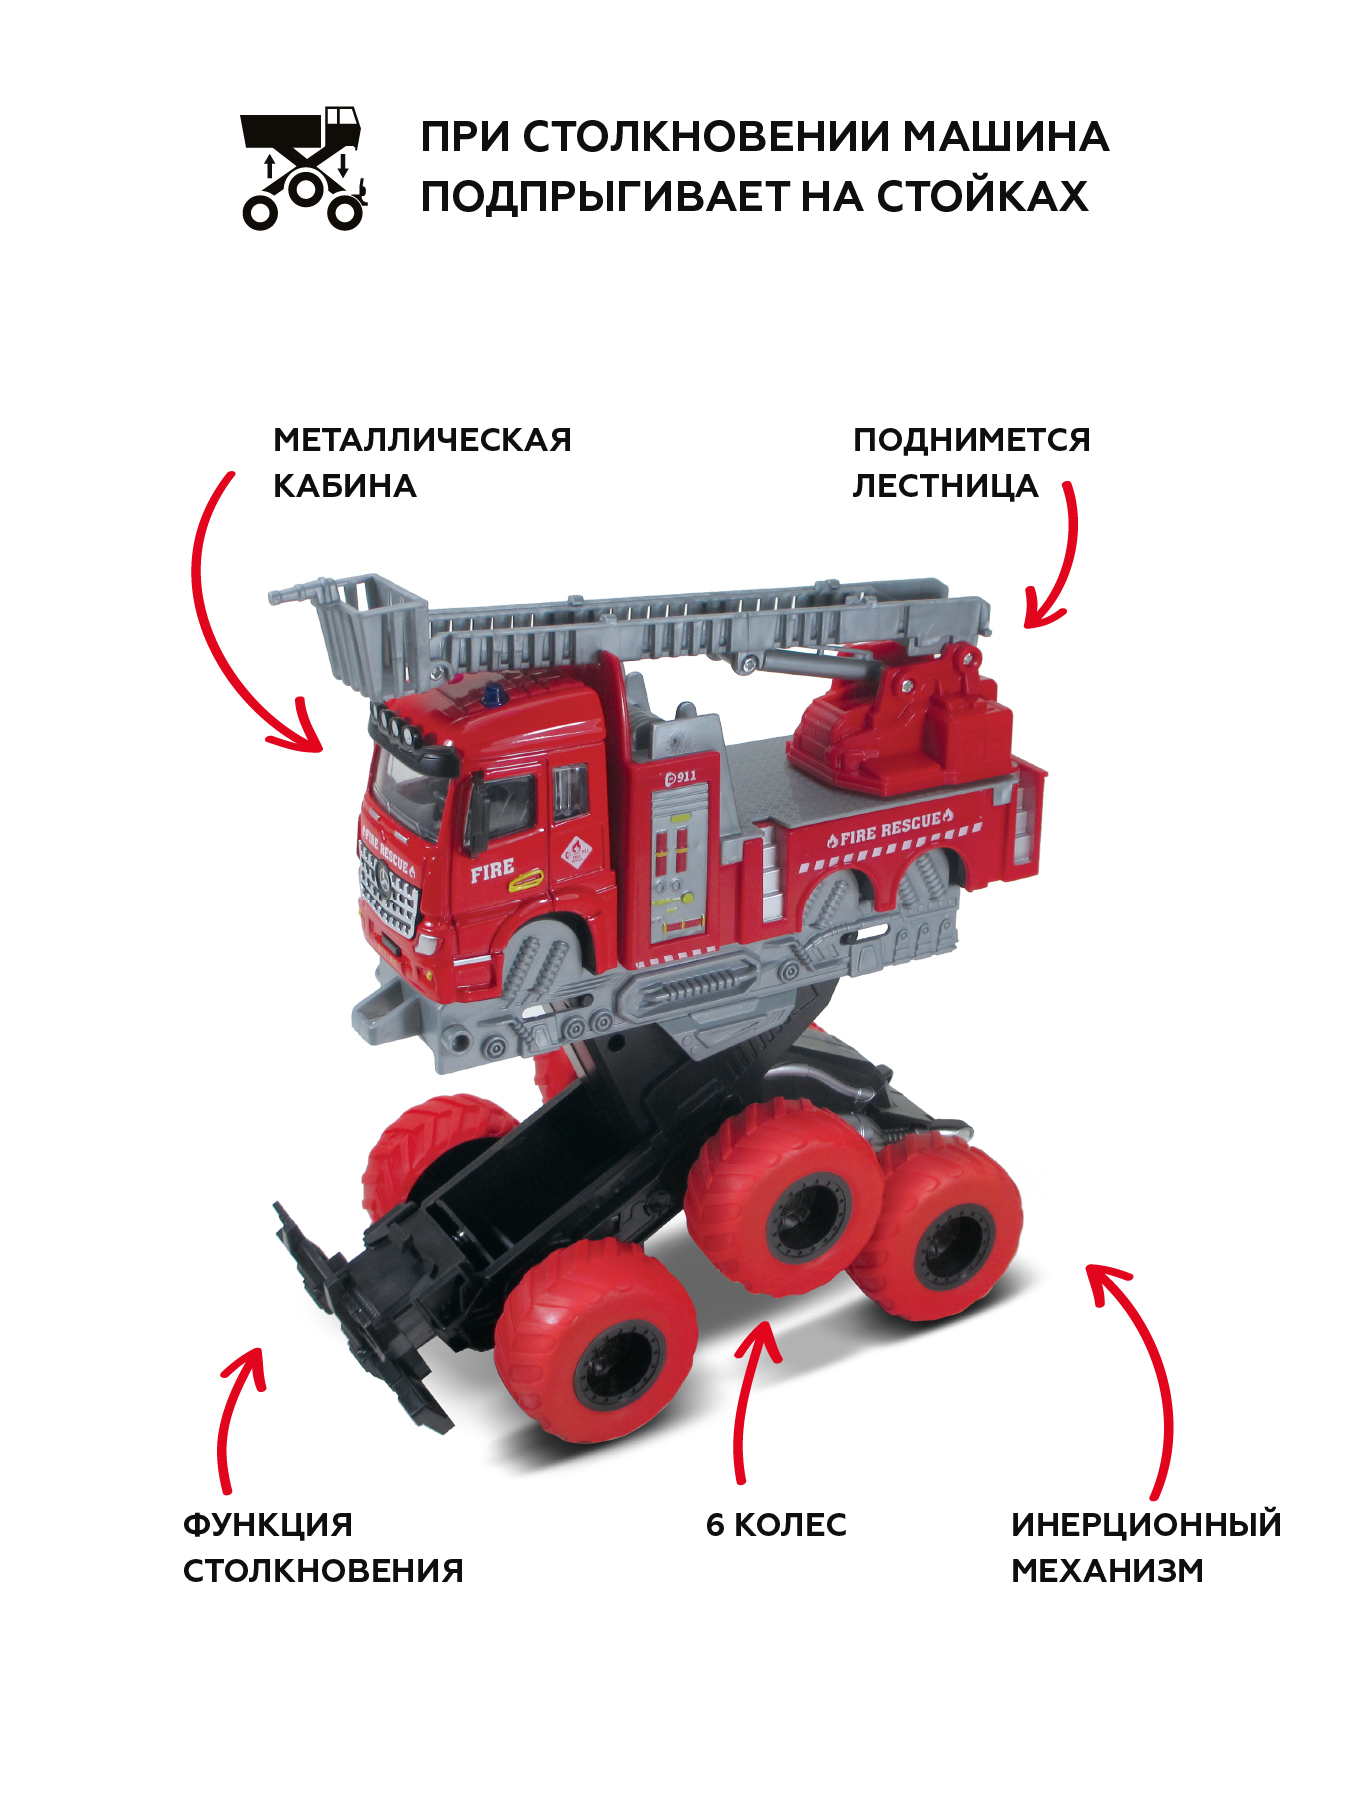 Пожарная машина Пламенный мотор для мальчиков Монстр трак металлическая инерционная 870826 - фото 2